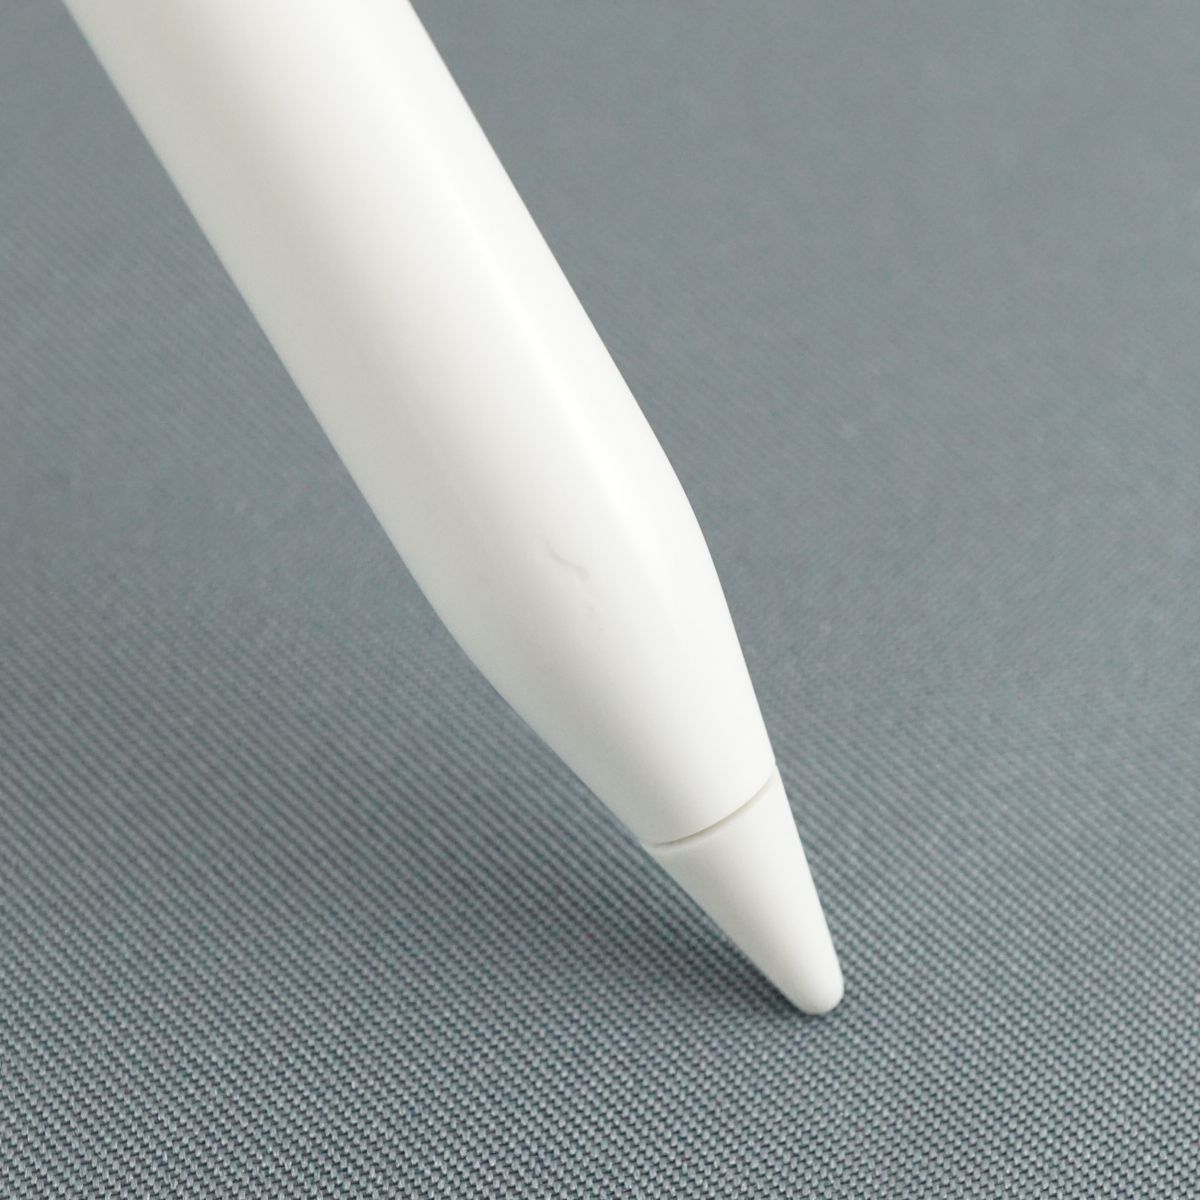 国内正規取扱店 Apple Pencil USED品 本体のみ 第二世代 アップル